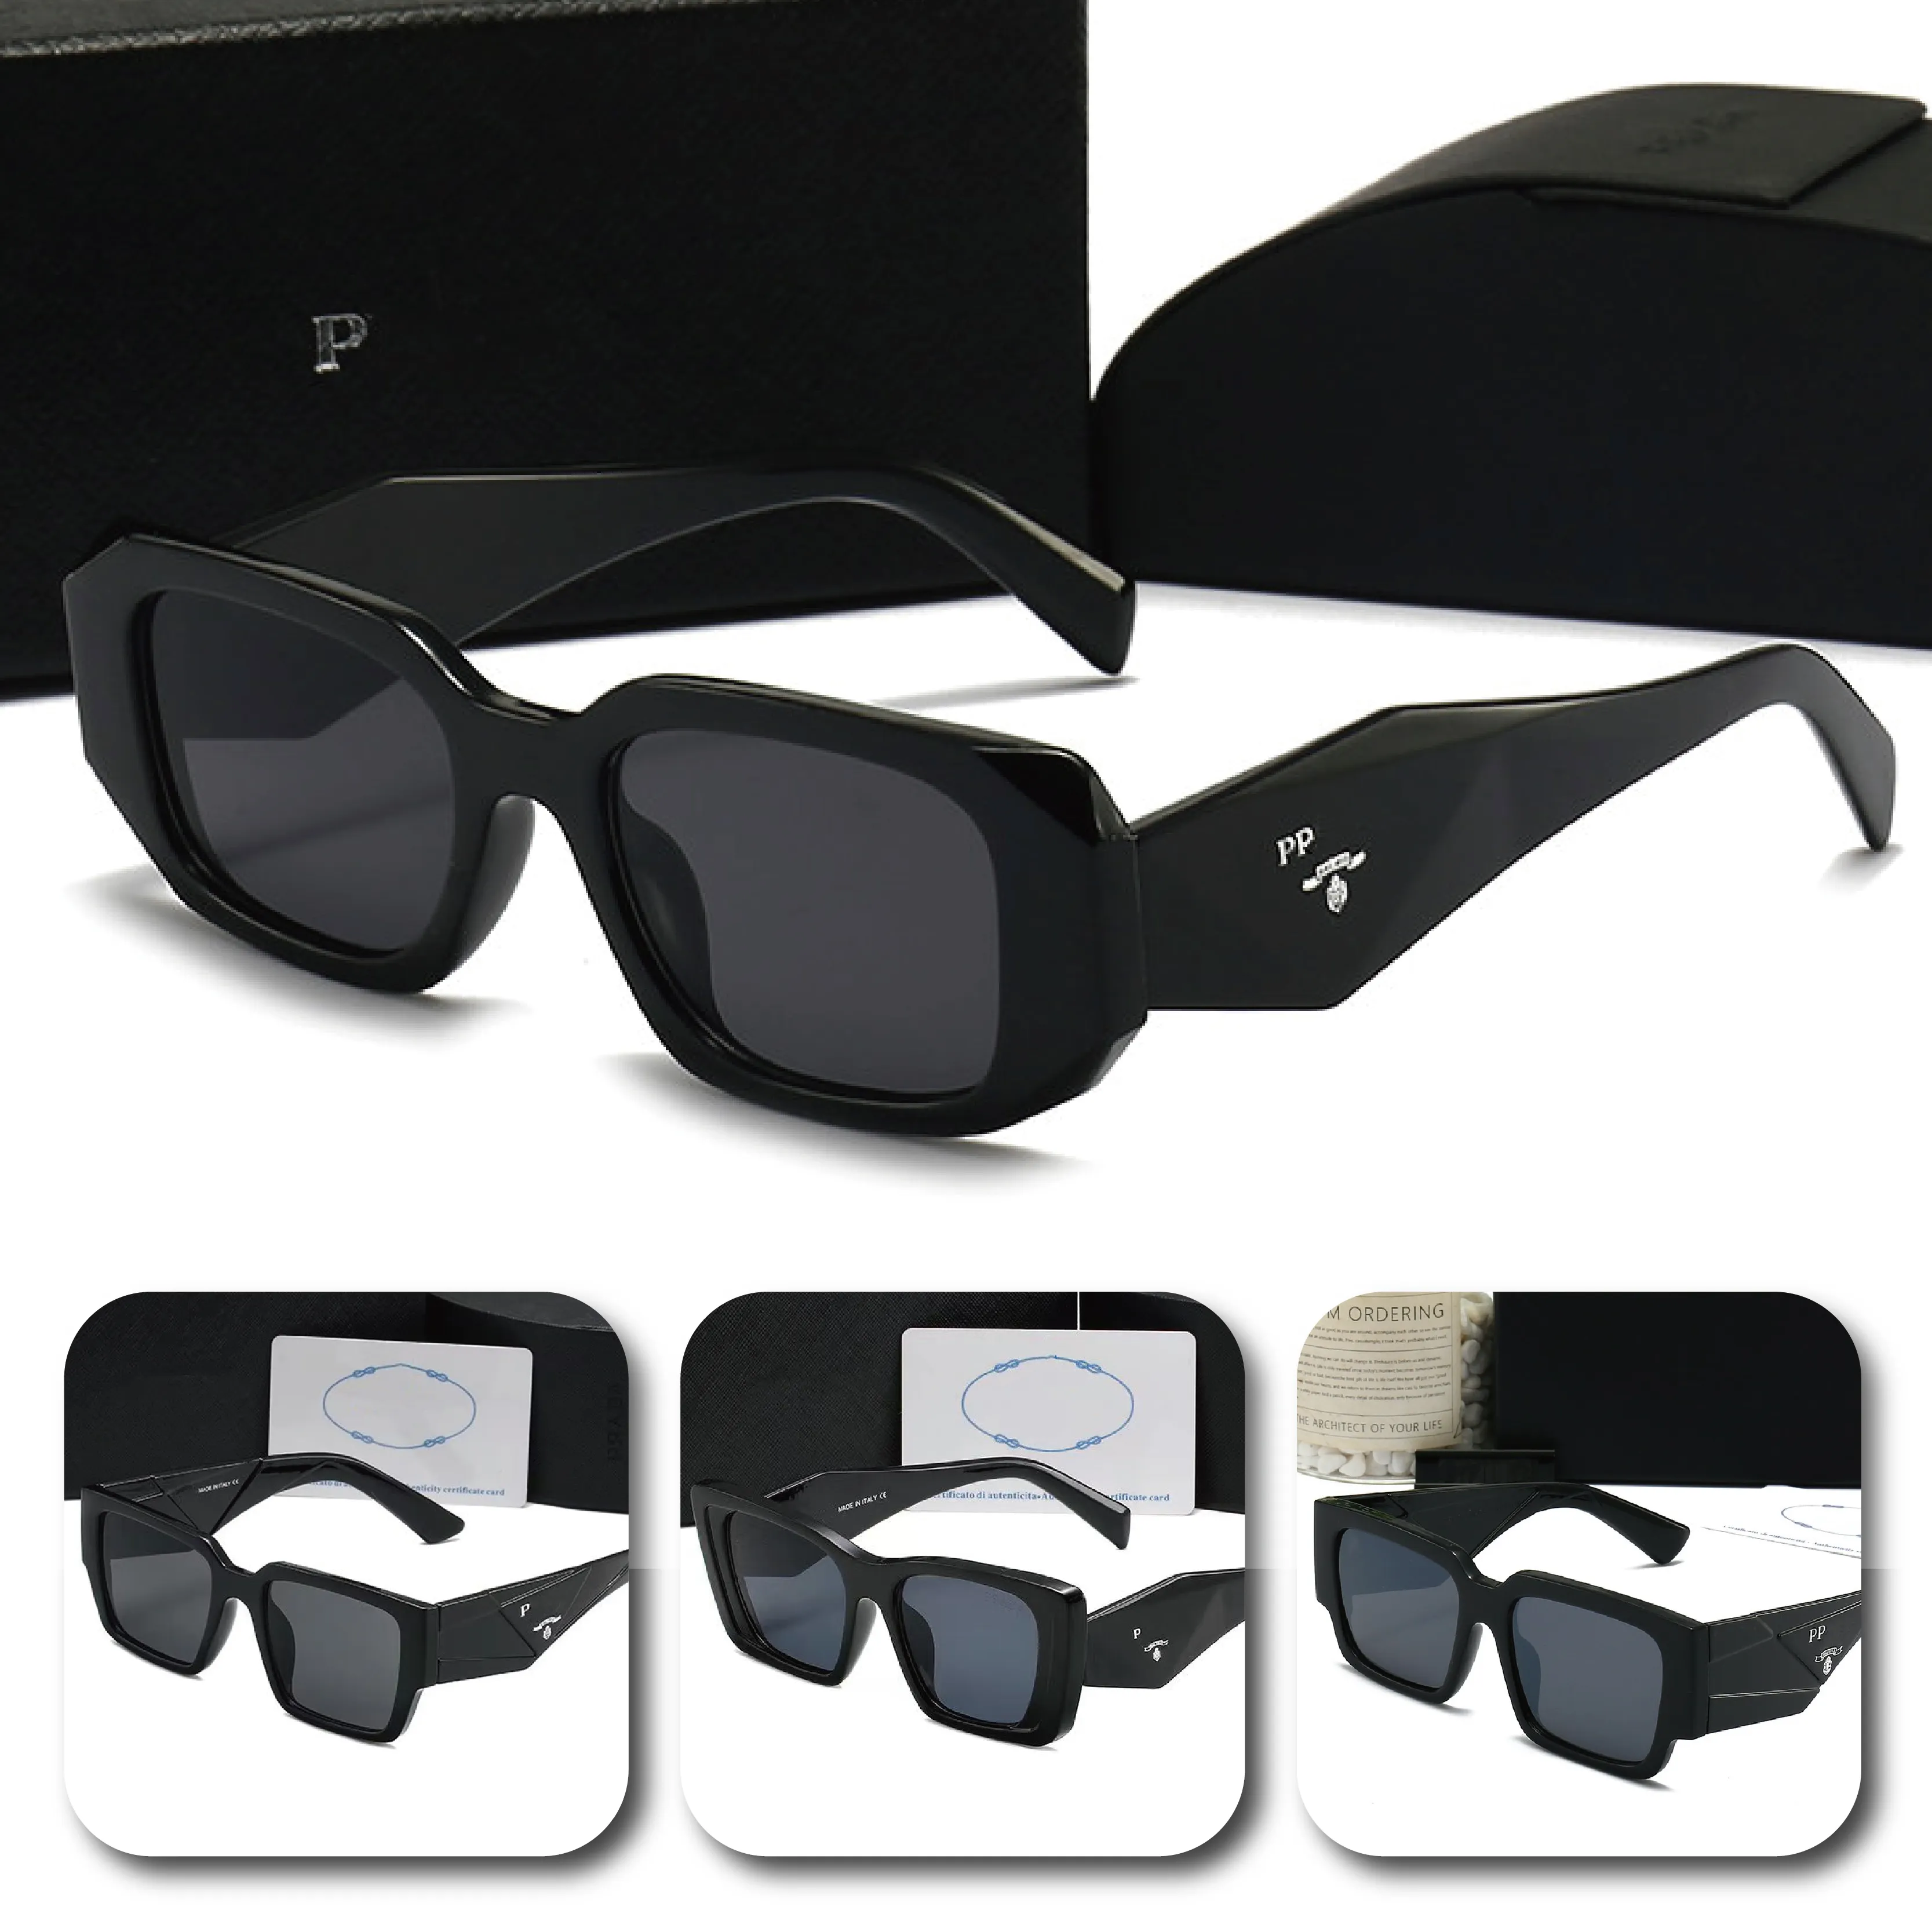 Kwadratowe okulary przeciwsłoneczne HD nylonowe soczewki UV400 Anty-promieniowanie moda uliczna plaża wybieg odpowiednie do noszenia w pasującym stylu markowe okulary przeciwsłoneczne unisex z pudełkiem